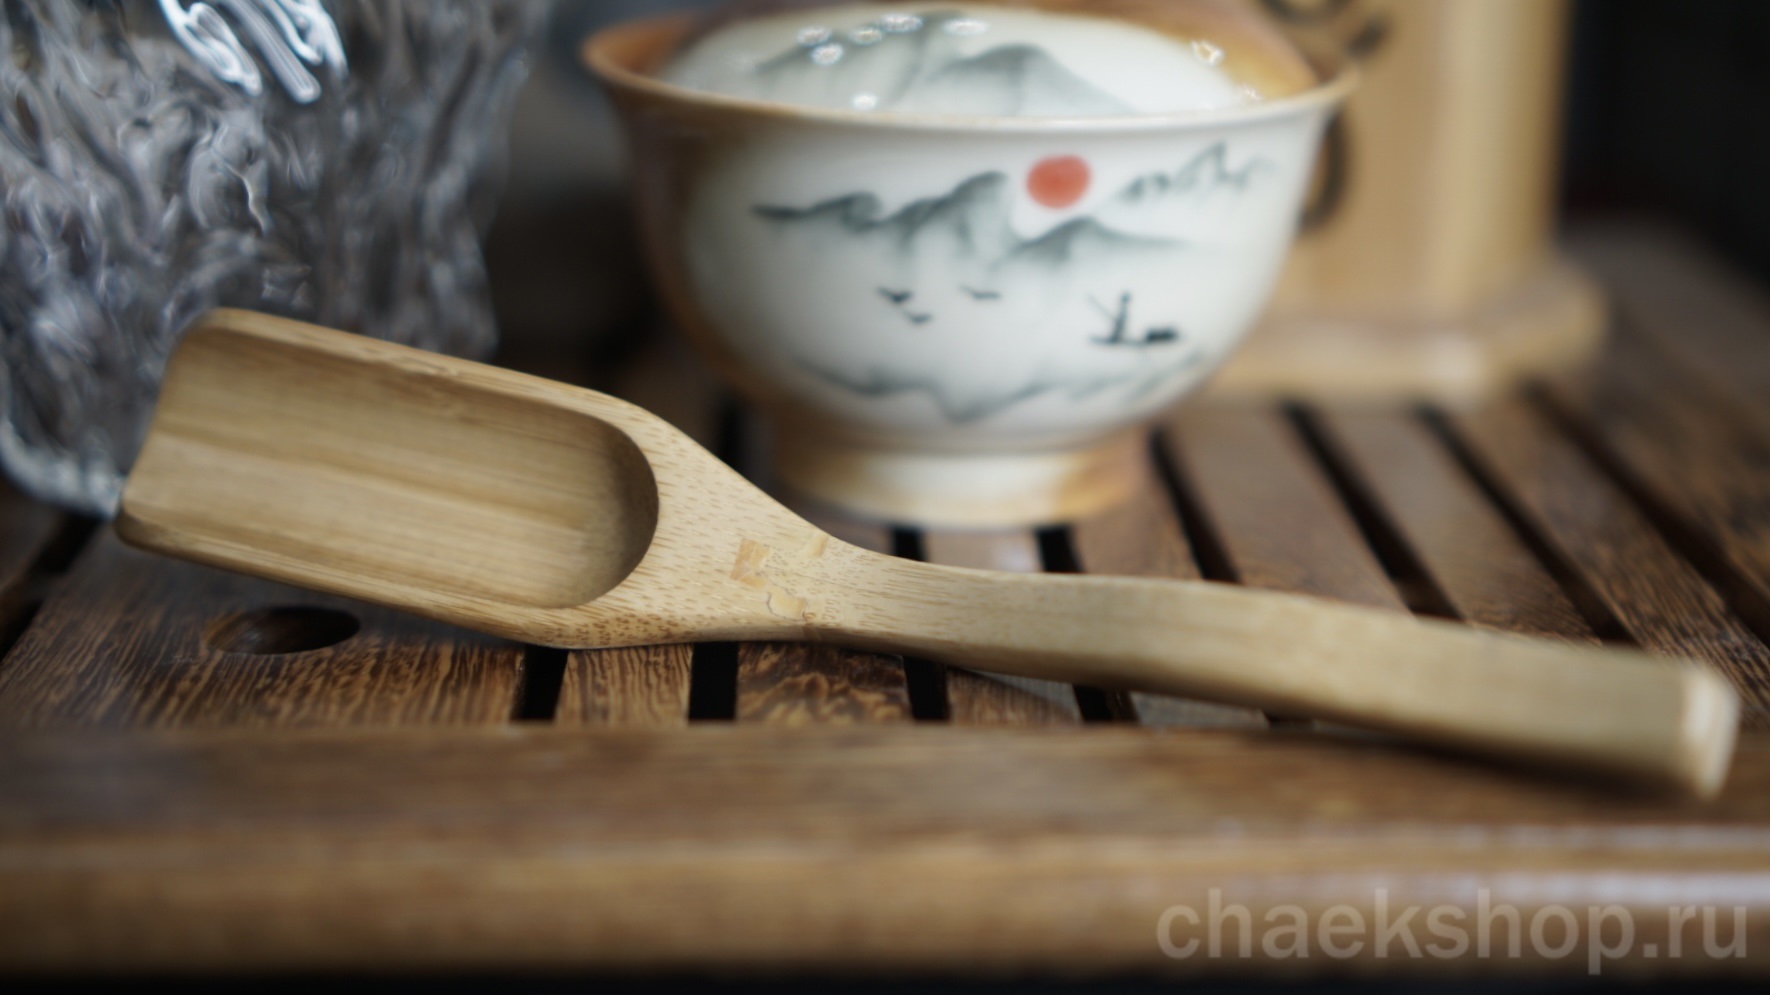   Совочек (чашао 茶勺 chásháo) - для пересыпания необходимого количества чая из упаковки в чайник или гайвань.